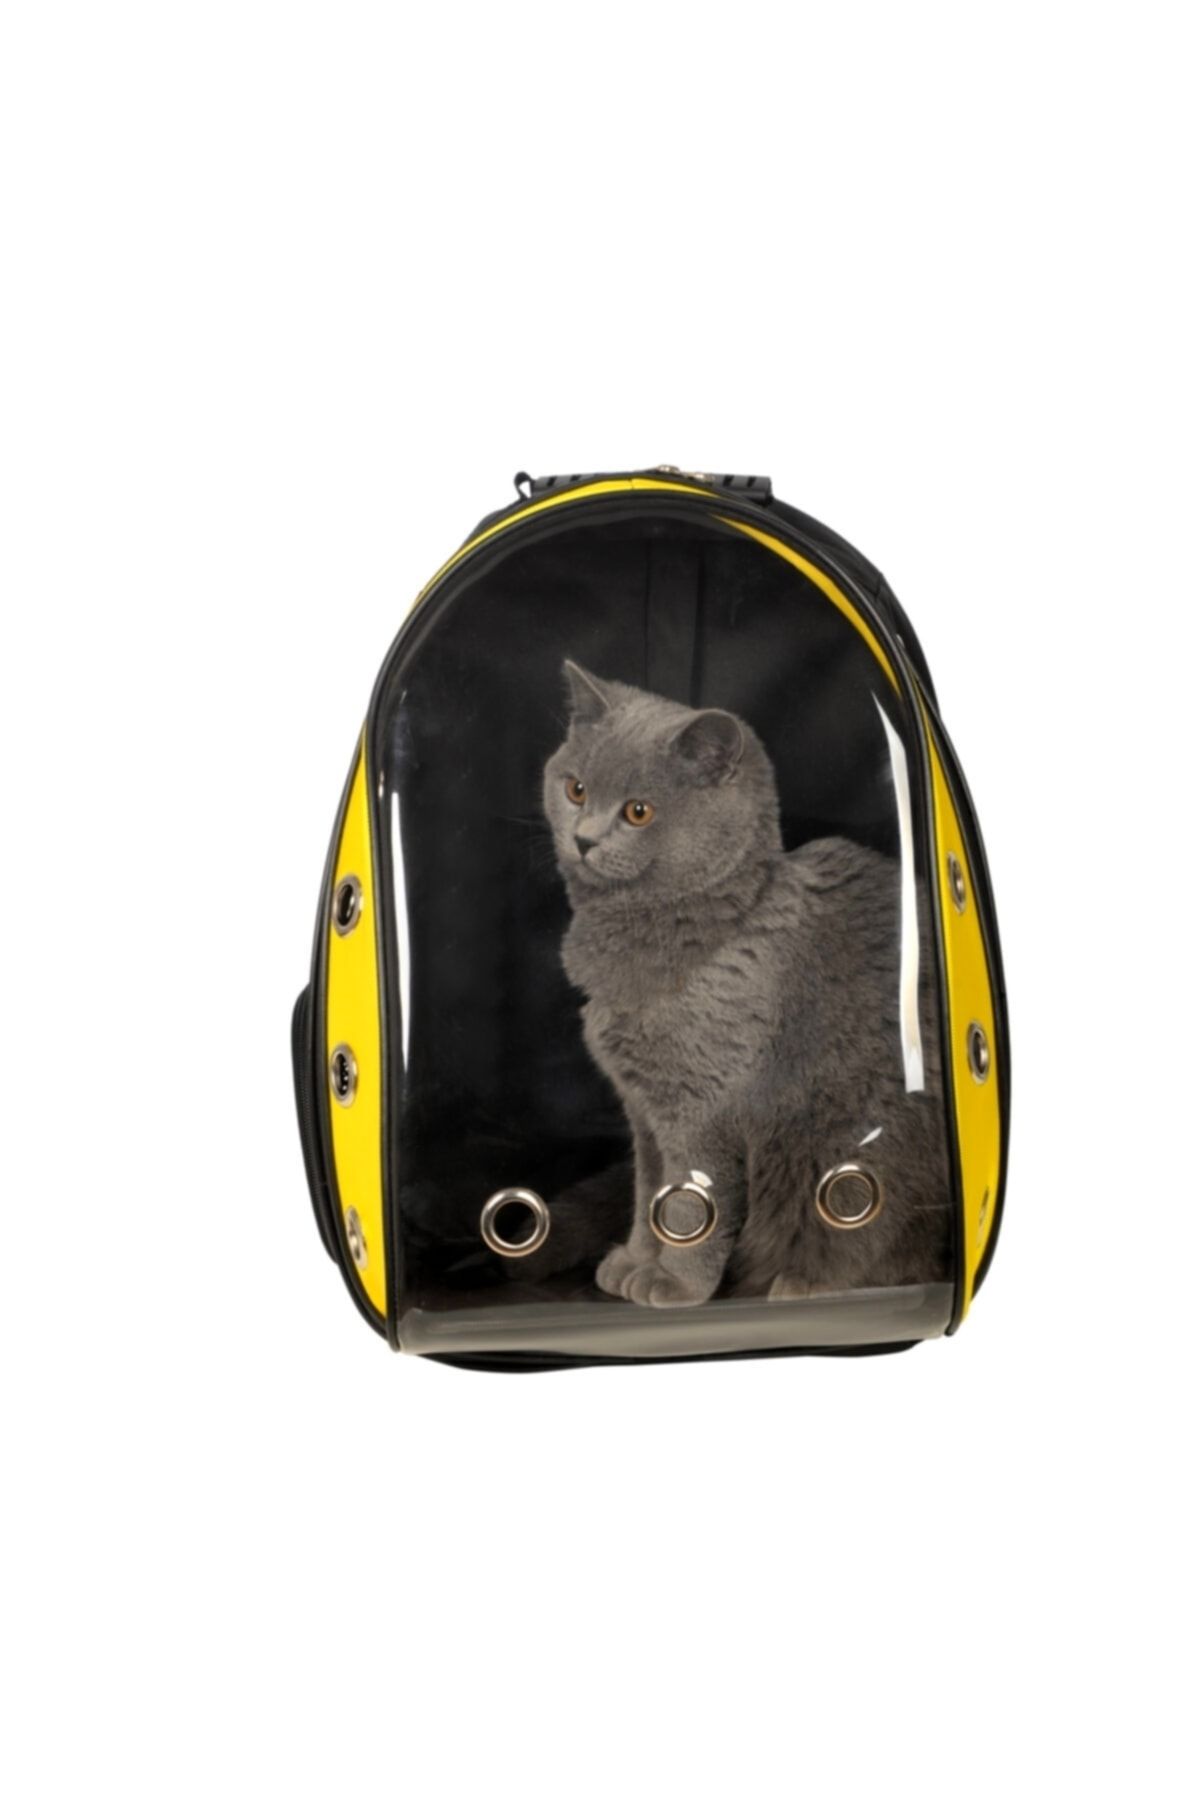 Stok CITY Şeffaf Astronot Kırılmaz Kedi Köpek Taşıma Çantası 42 X 22 X 33 Cm Sarı Ked03